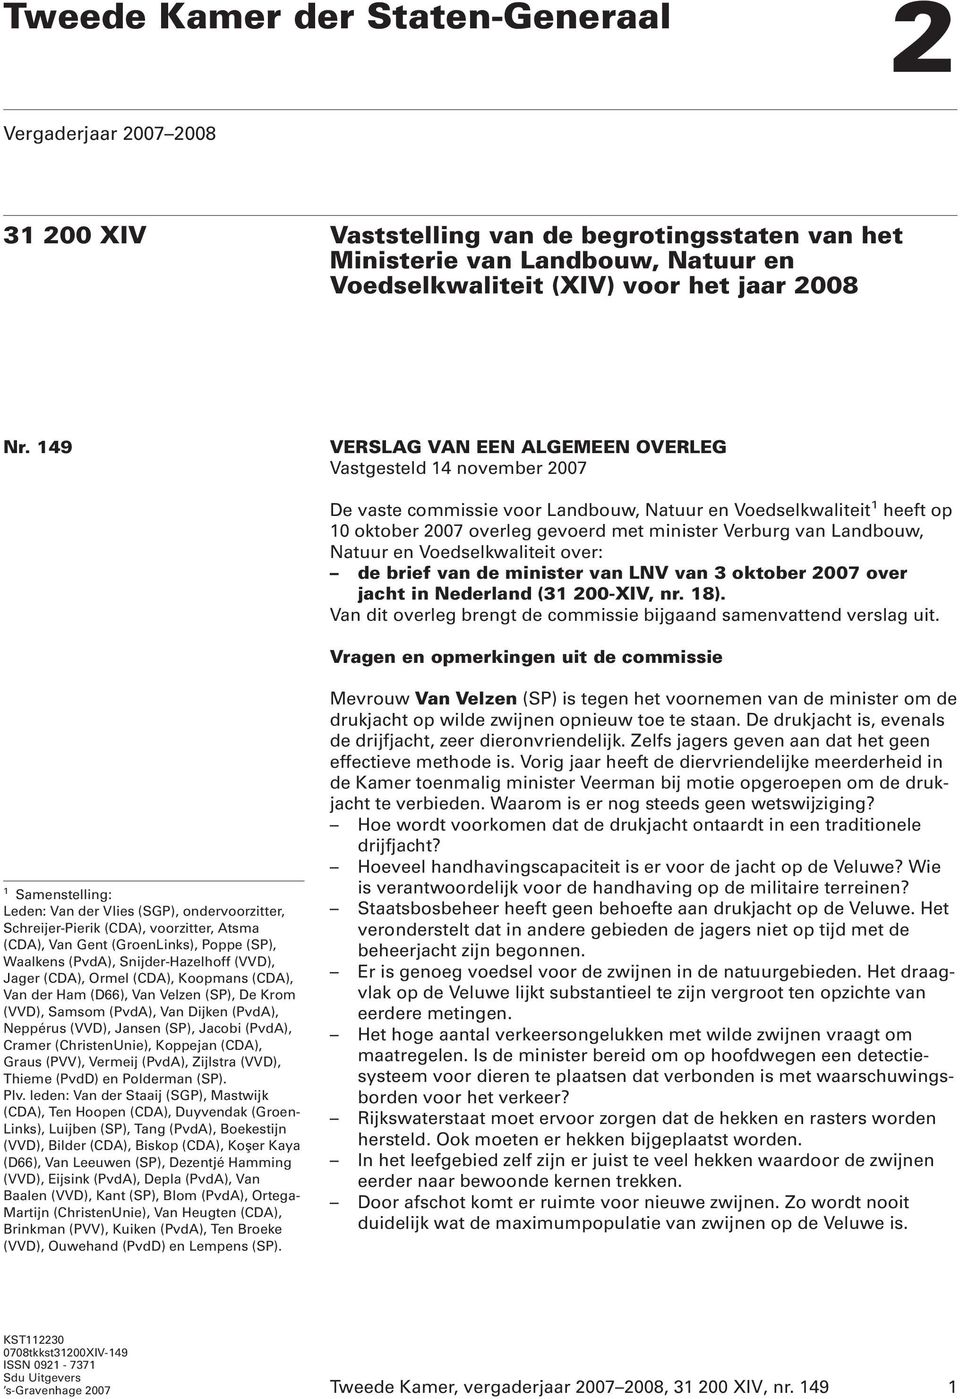 Landbouw, Natuur en Voedselkwaliteit over: de brief van de minister van LNV van 3 oktober 2007 over jacht in Nederland (31 200-XIV, nr. 18).